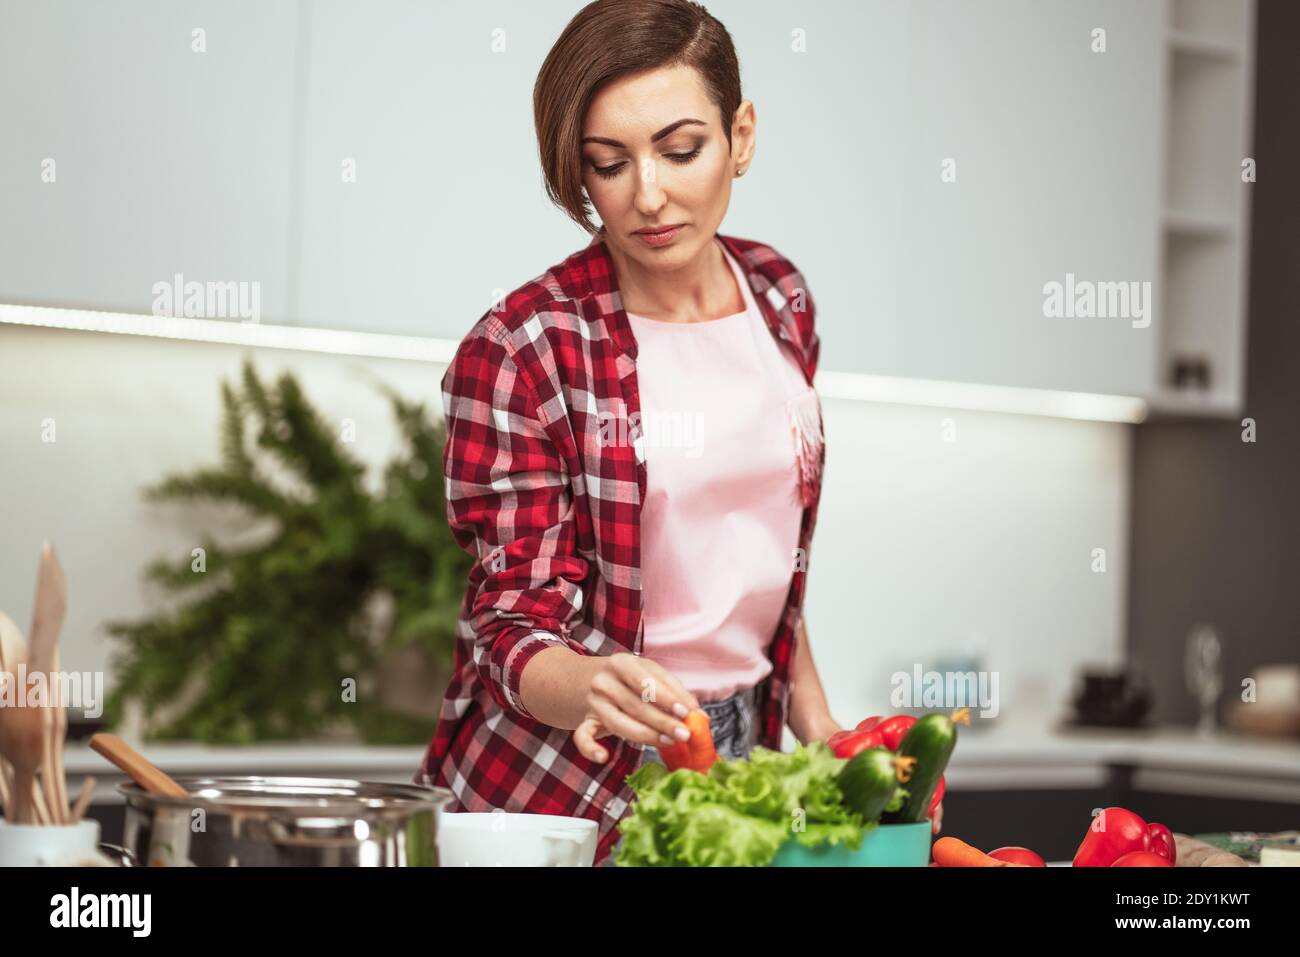 Kochen zu Hause für die liebevolle Familie. Zutaten auf dem Tisch vorbereiten junge Frau beim Kochen ein Mittagessen in der Küche stehend. Gesunde Ernährung leben. Gesund Stockfoto